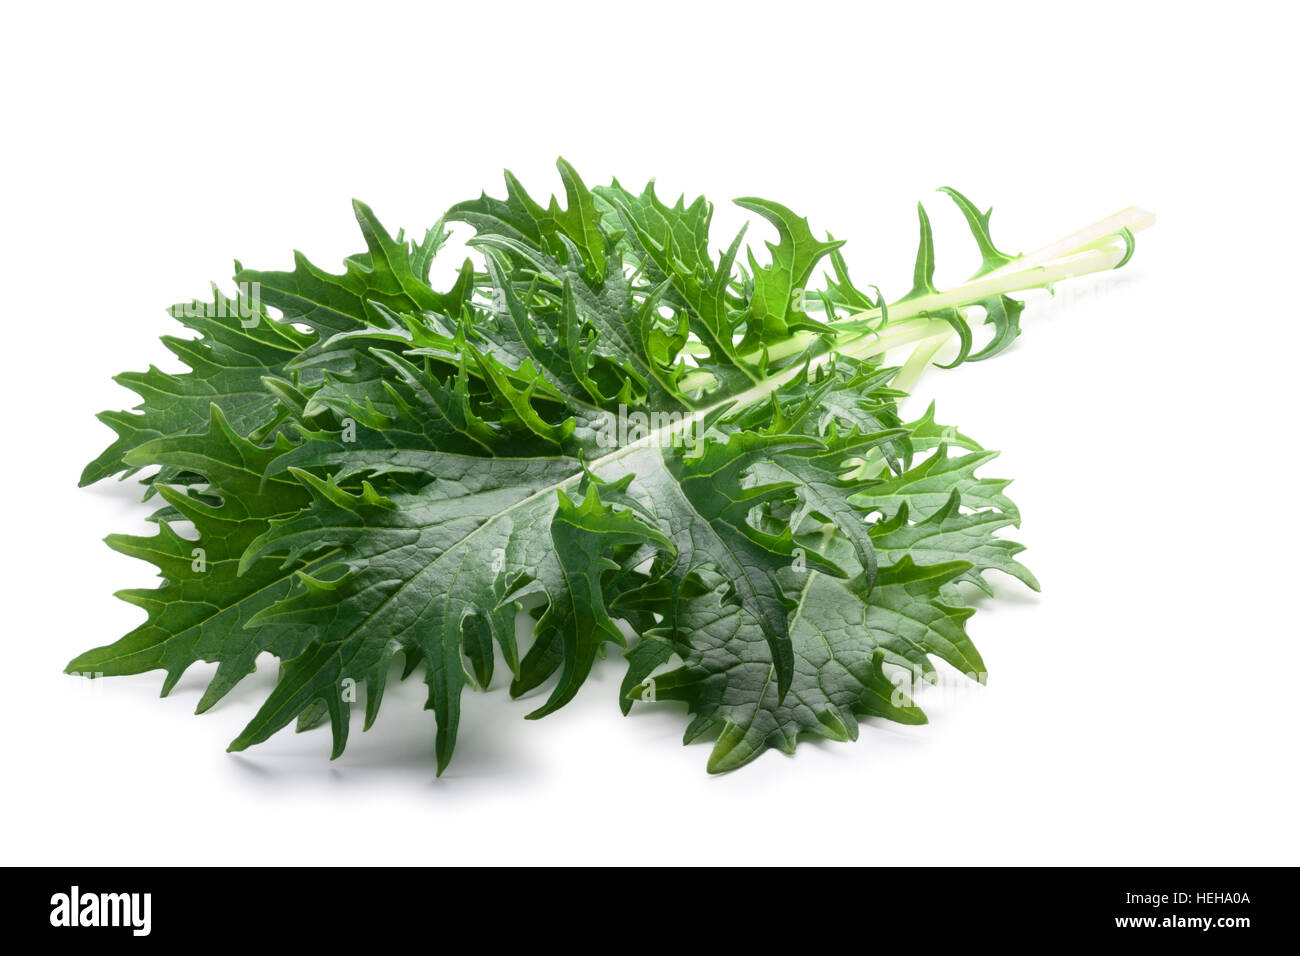 Reihe von grünen Blattsalat Mizuna (japanische Senf). Brassica Rapa Nipponsinica kultiviert Vielzahl. Schneidepfade, Schatten getrennt Stockfoto